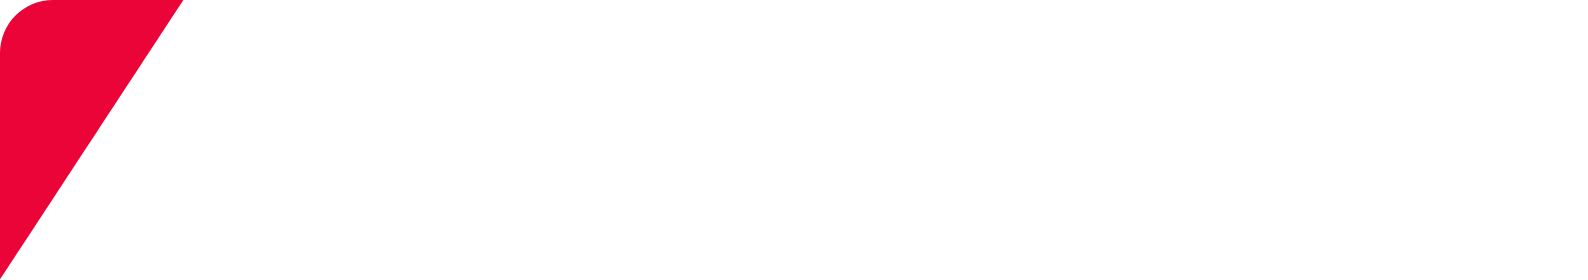 Keyence logo large for dark backgrounds (transparent PNG)